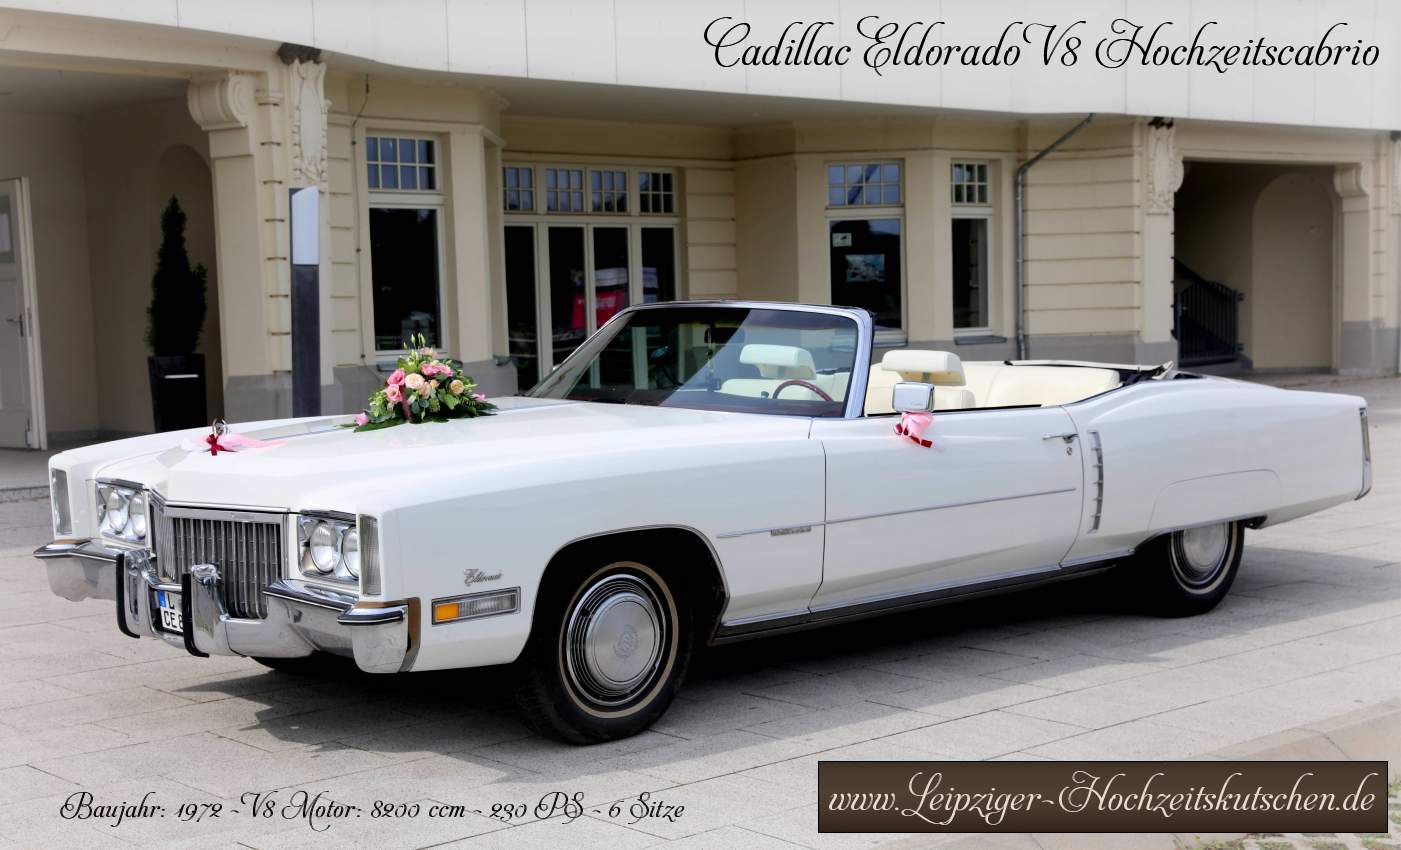 Weies Cadillac Cabrio als Hochzeitsauto in  Wurzen mieten